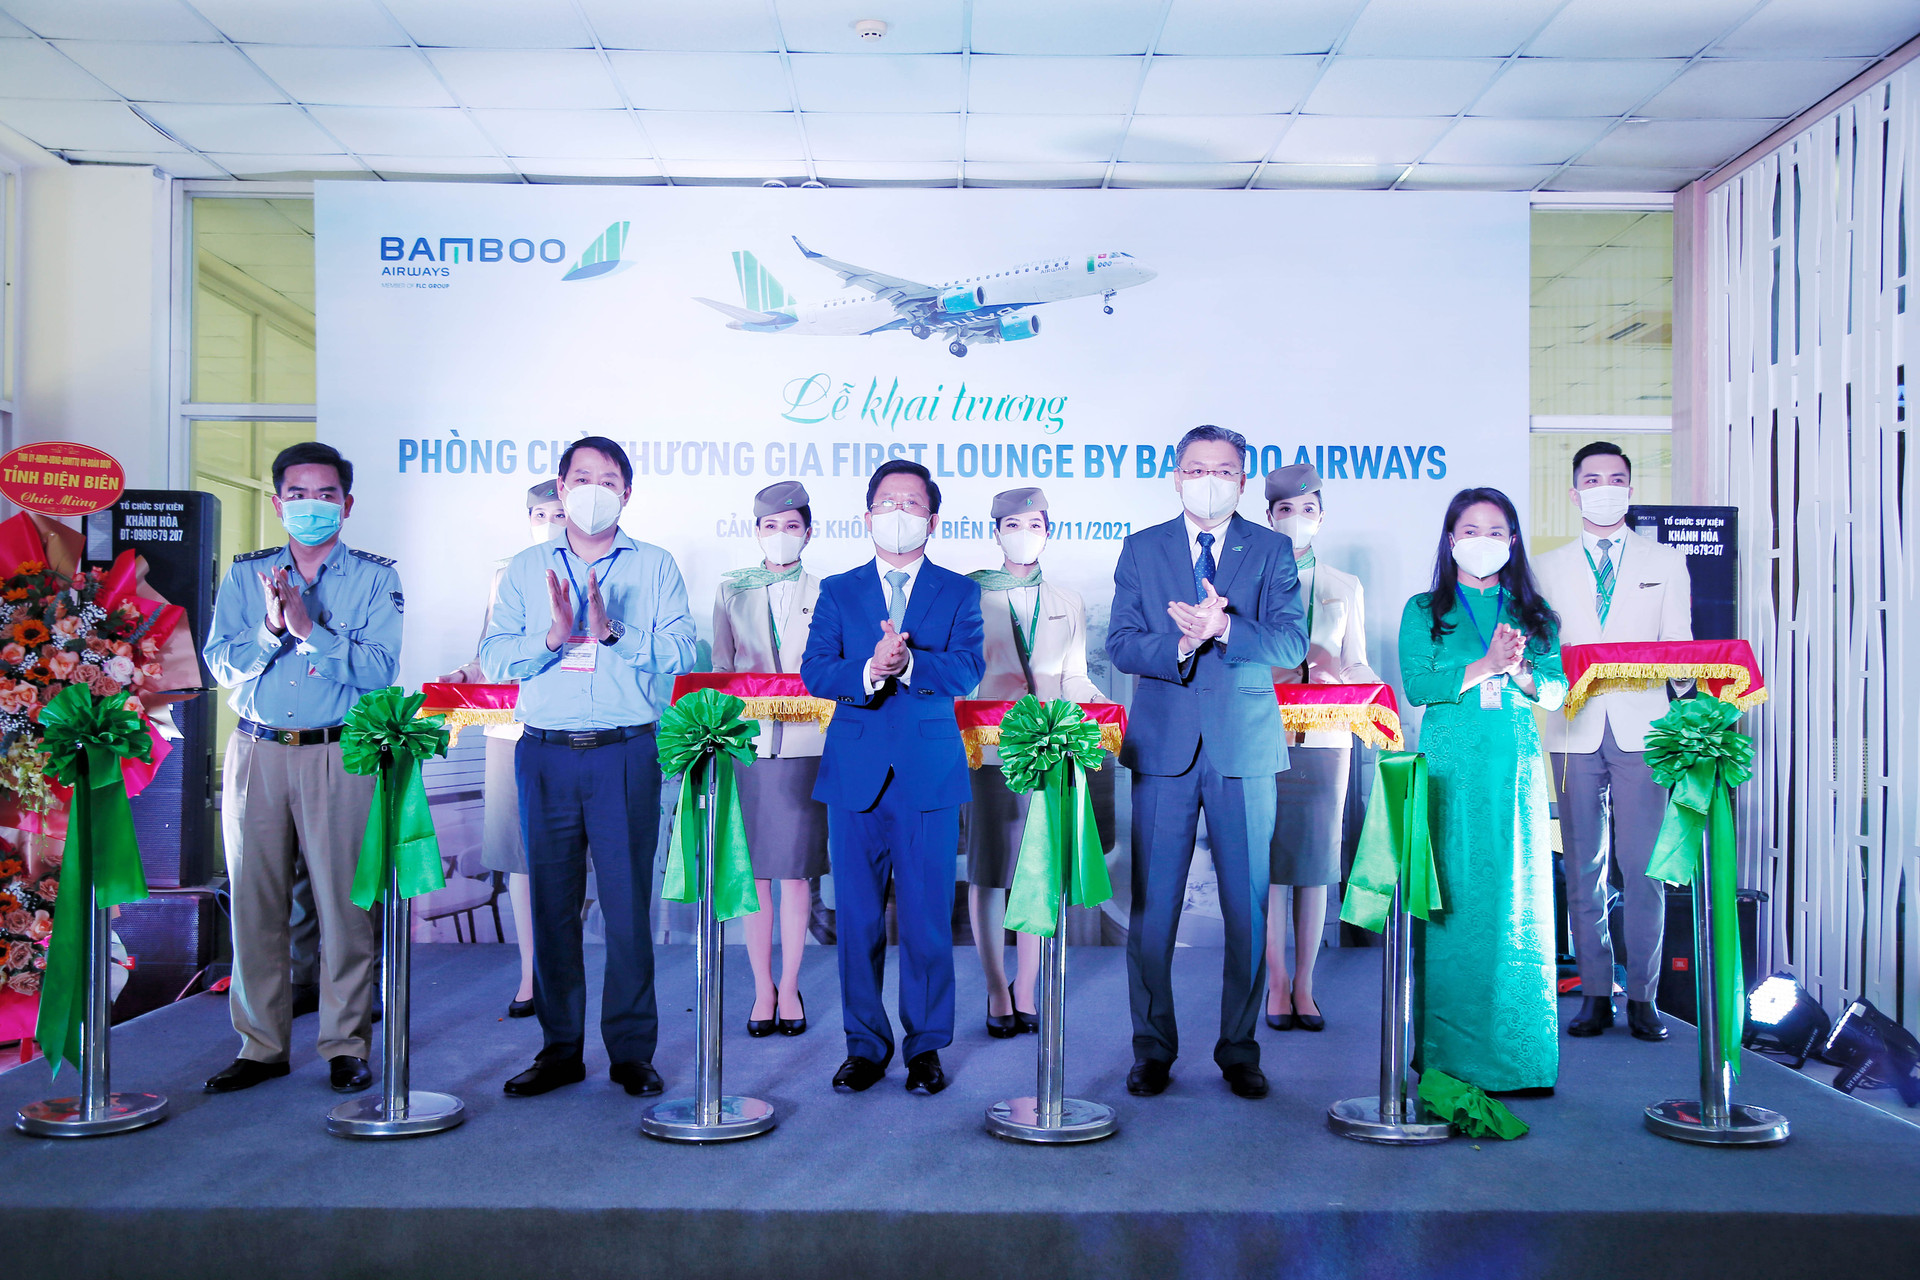 Đại diện lãnh đạo tỉnh Điện Biên, lãnh đạo Cảng hàng không Điện Biên Phủ và lãnh đạo Bamboo Airways cắt băng khai trương Phòng chờ Thương gia First Lounge by Bamboo Airways tại Điện Biên.